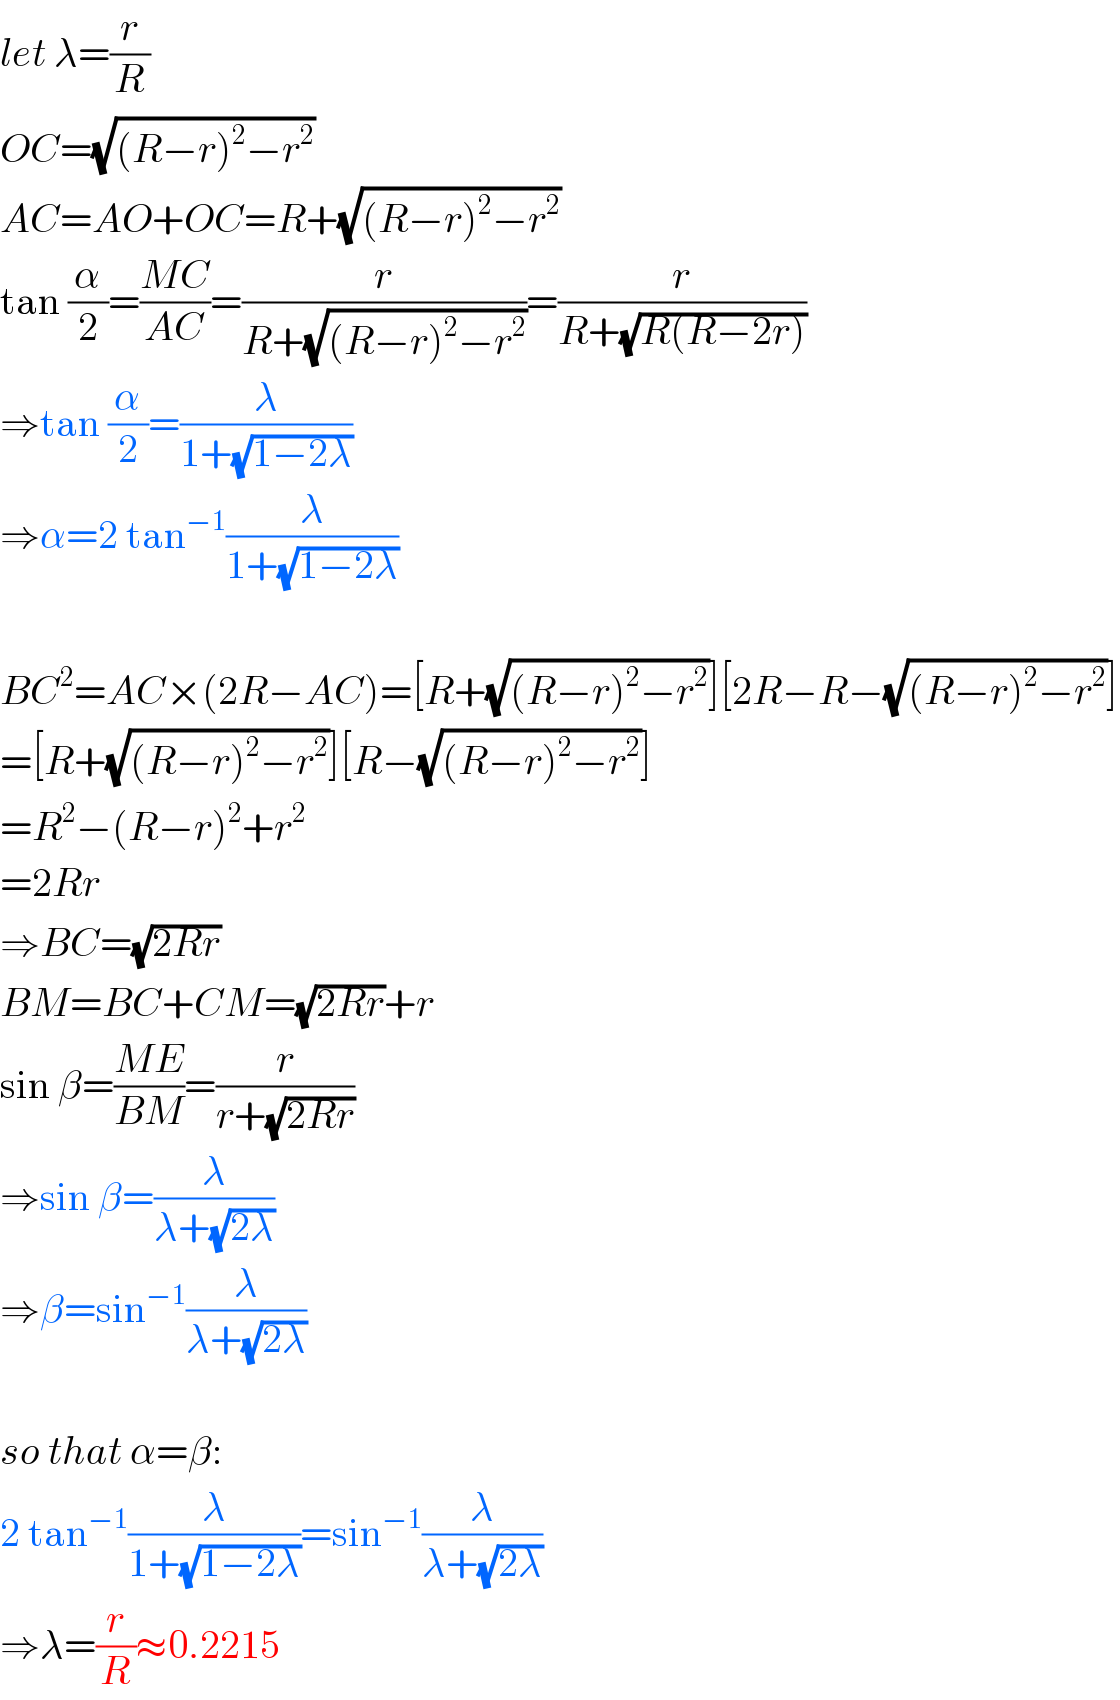 let λ=(r/R)  OC=(√((R−r)^2 −r^2 ))  AC=AO+OC=R+(√((R−r)^2 −r^2 ))  tan (α/2)=((MC)/(AC))=(r/(R+(√((R−r)^2 −r^2 ))))=(r/(R+(√(R(R−2r)))))  ⇒tan (α/2)=(λ/(1+(√(1−2λ))))  ⇒α=2 tan^(−1) (λ/(1+(√(1−2λ))))    BC^2 =AC×(2R−AC)=[R+(√((R−r)^2 −r^2 ))][2R−R−(√((R−r)^2 −r^2 ))]  =[R+(√((R−r)^2 −r^2 ))][R−(√((R−r)^2 −r^2 ))]  =R^2 −(R−r)^2 +r^2   =2Rr  ⇒BC=(√(2Rr))  BM=BC+CM=(√(2Rr))+r  sin β=((ME)/(BM))=(r/(r+(√(2Rr))))  ⇒sin β=(λ/(λ+(√(2λ))))  ⇒β=sin^(−1) (λ/(λ+(√(2λ))))    so that α=β:  2 tan^(−1) (λ/(1+(√(1−2λ))))=sin^(−1) (λ/(λ+(√(2λ))))  ⇒λ=(r/R)≈0.2215  